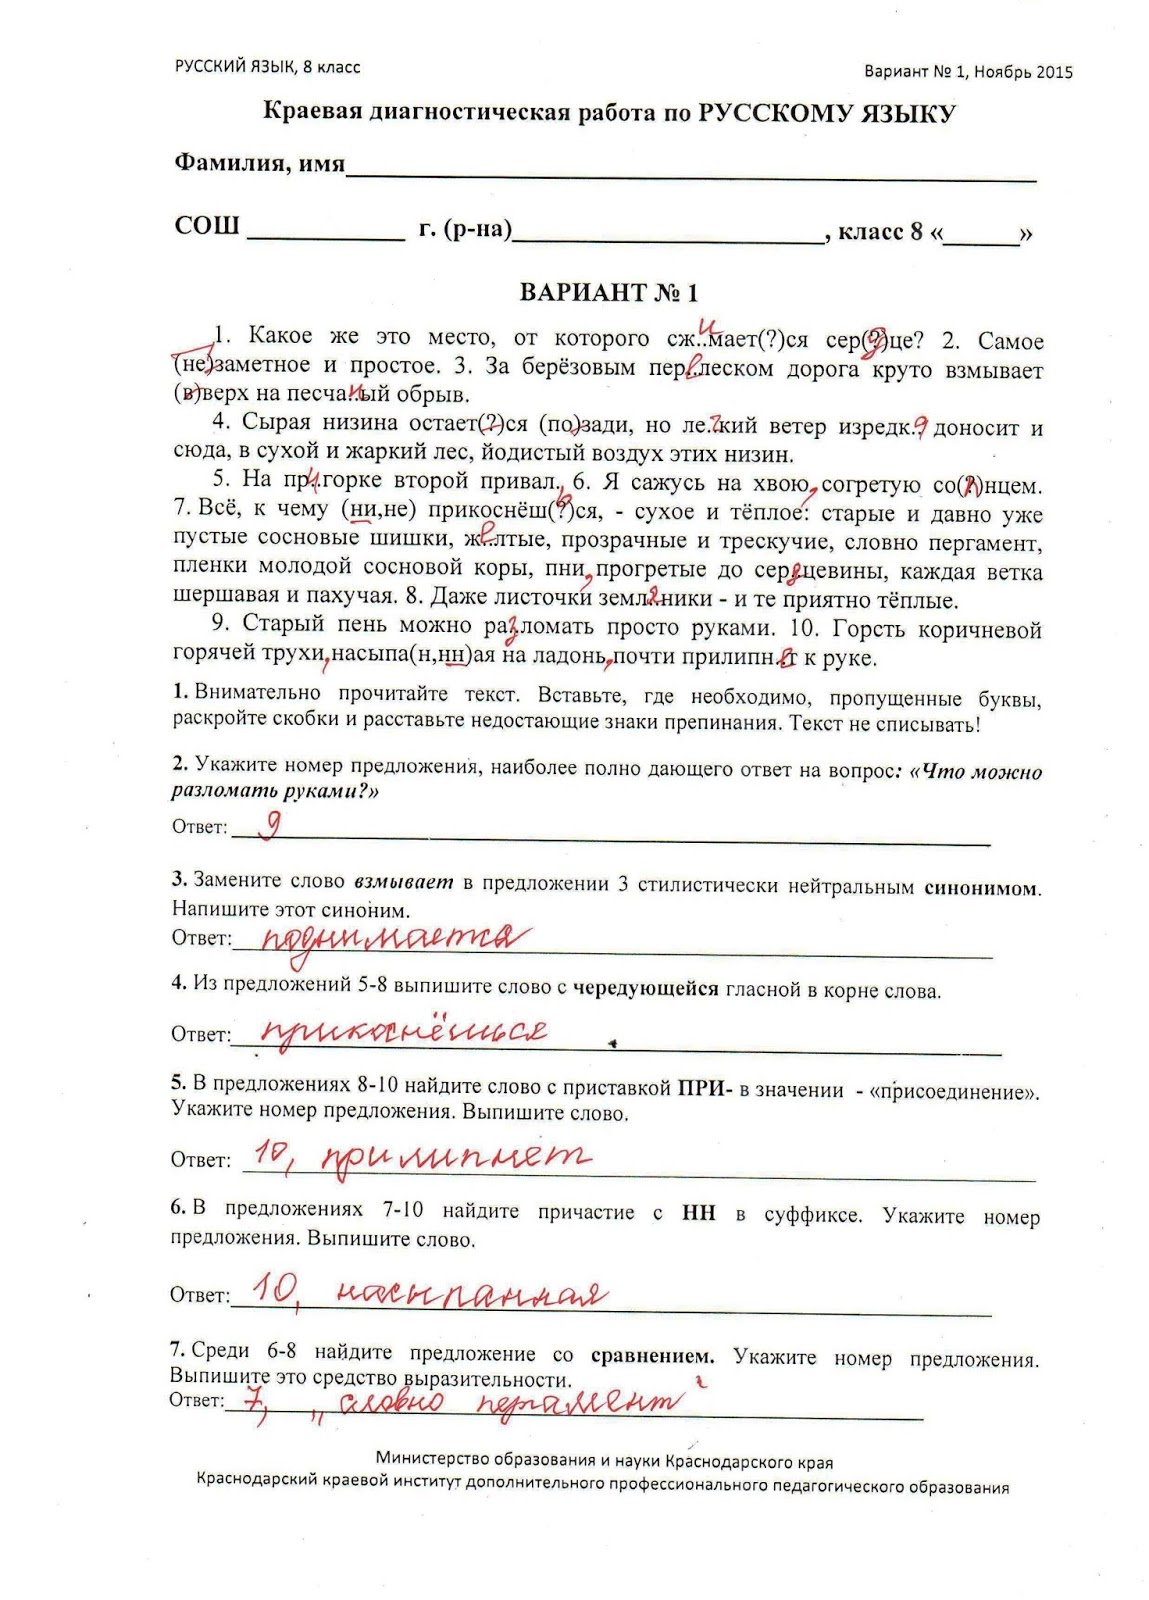 8 класс кдр по русскому языку декабрь